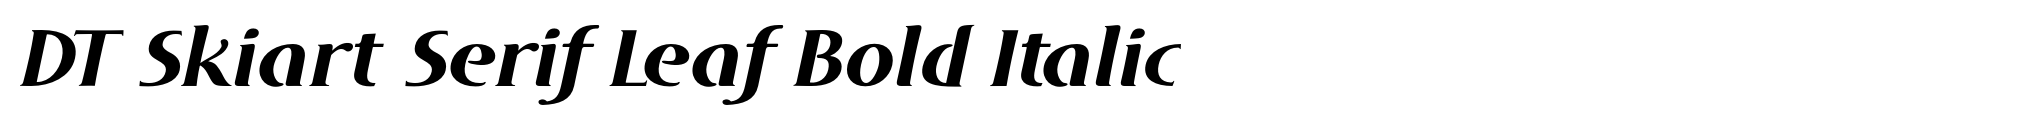 DT Skiart Serif Leaf Bold Italic image